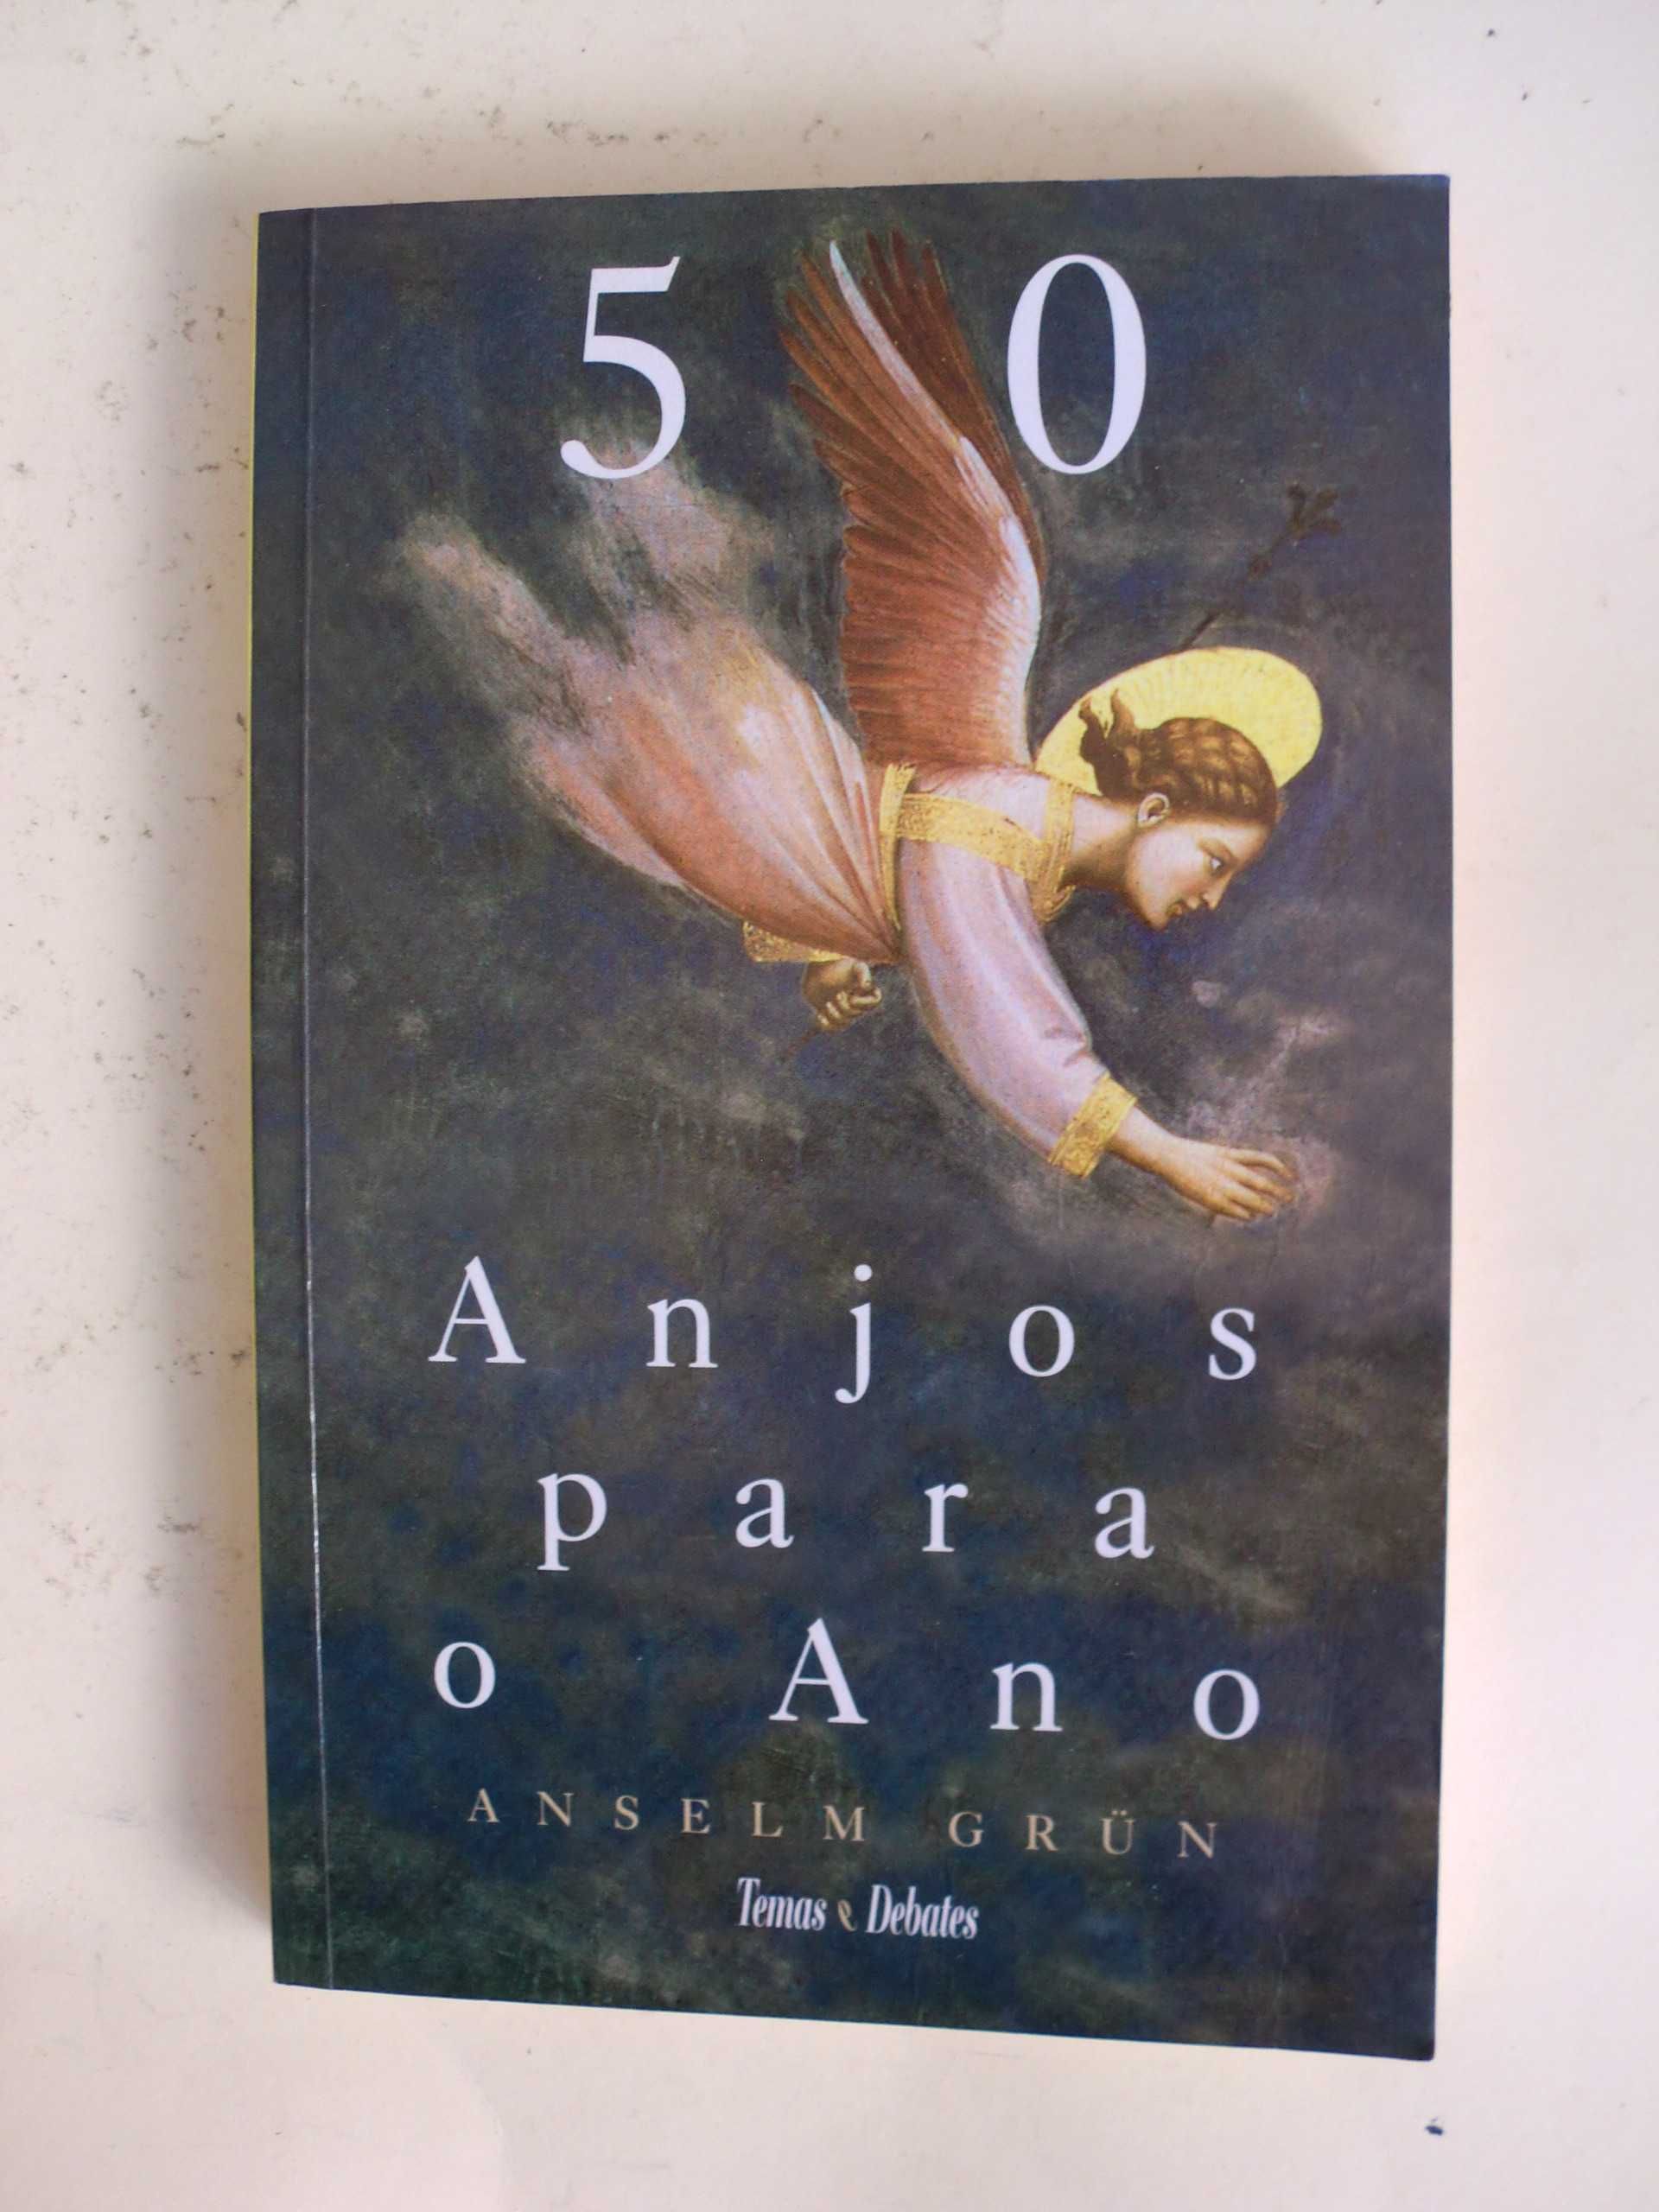 50 anjos para o Ano
de Anselm Grün